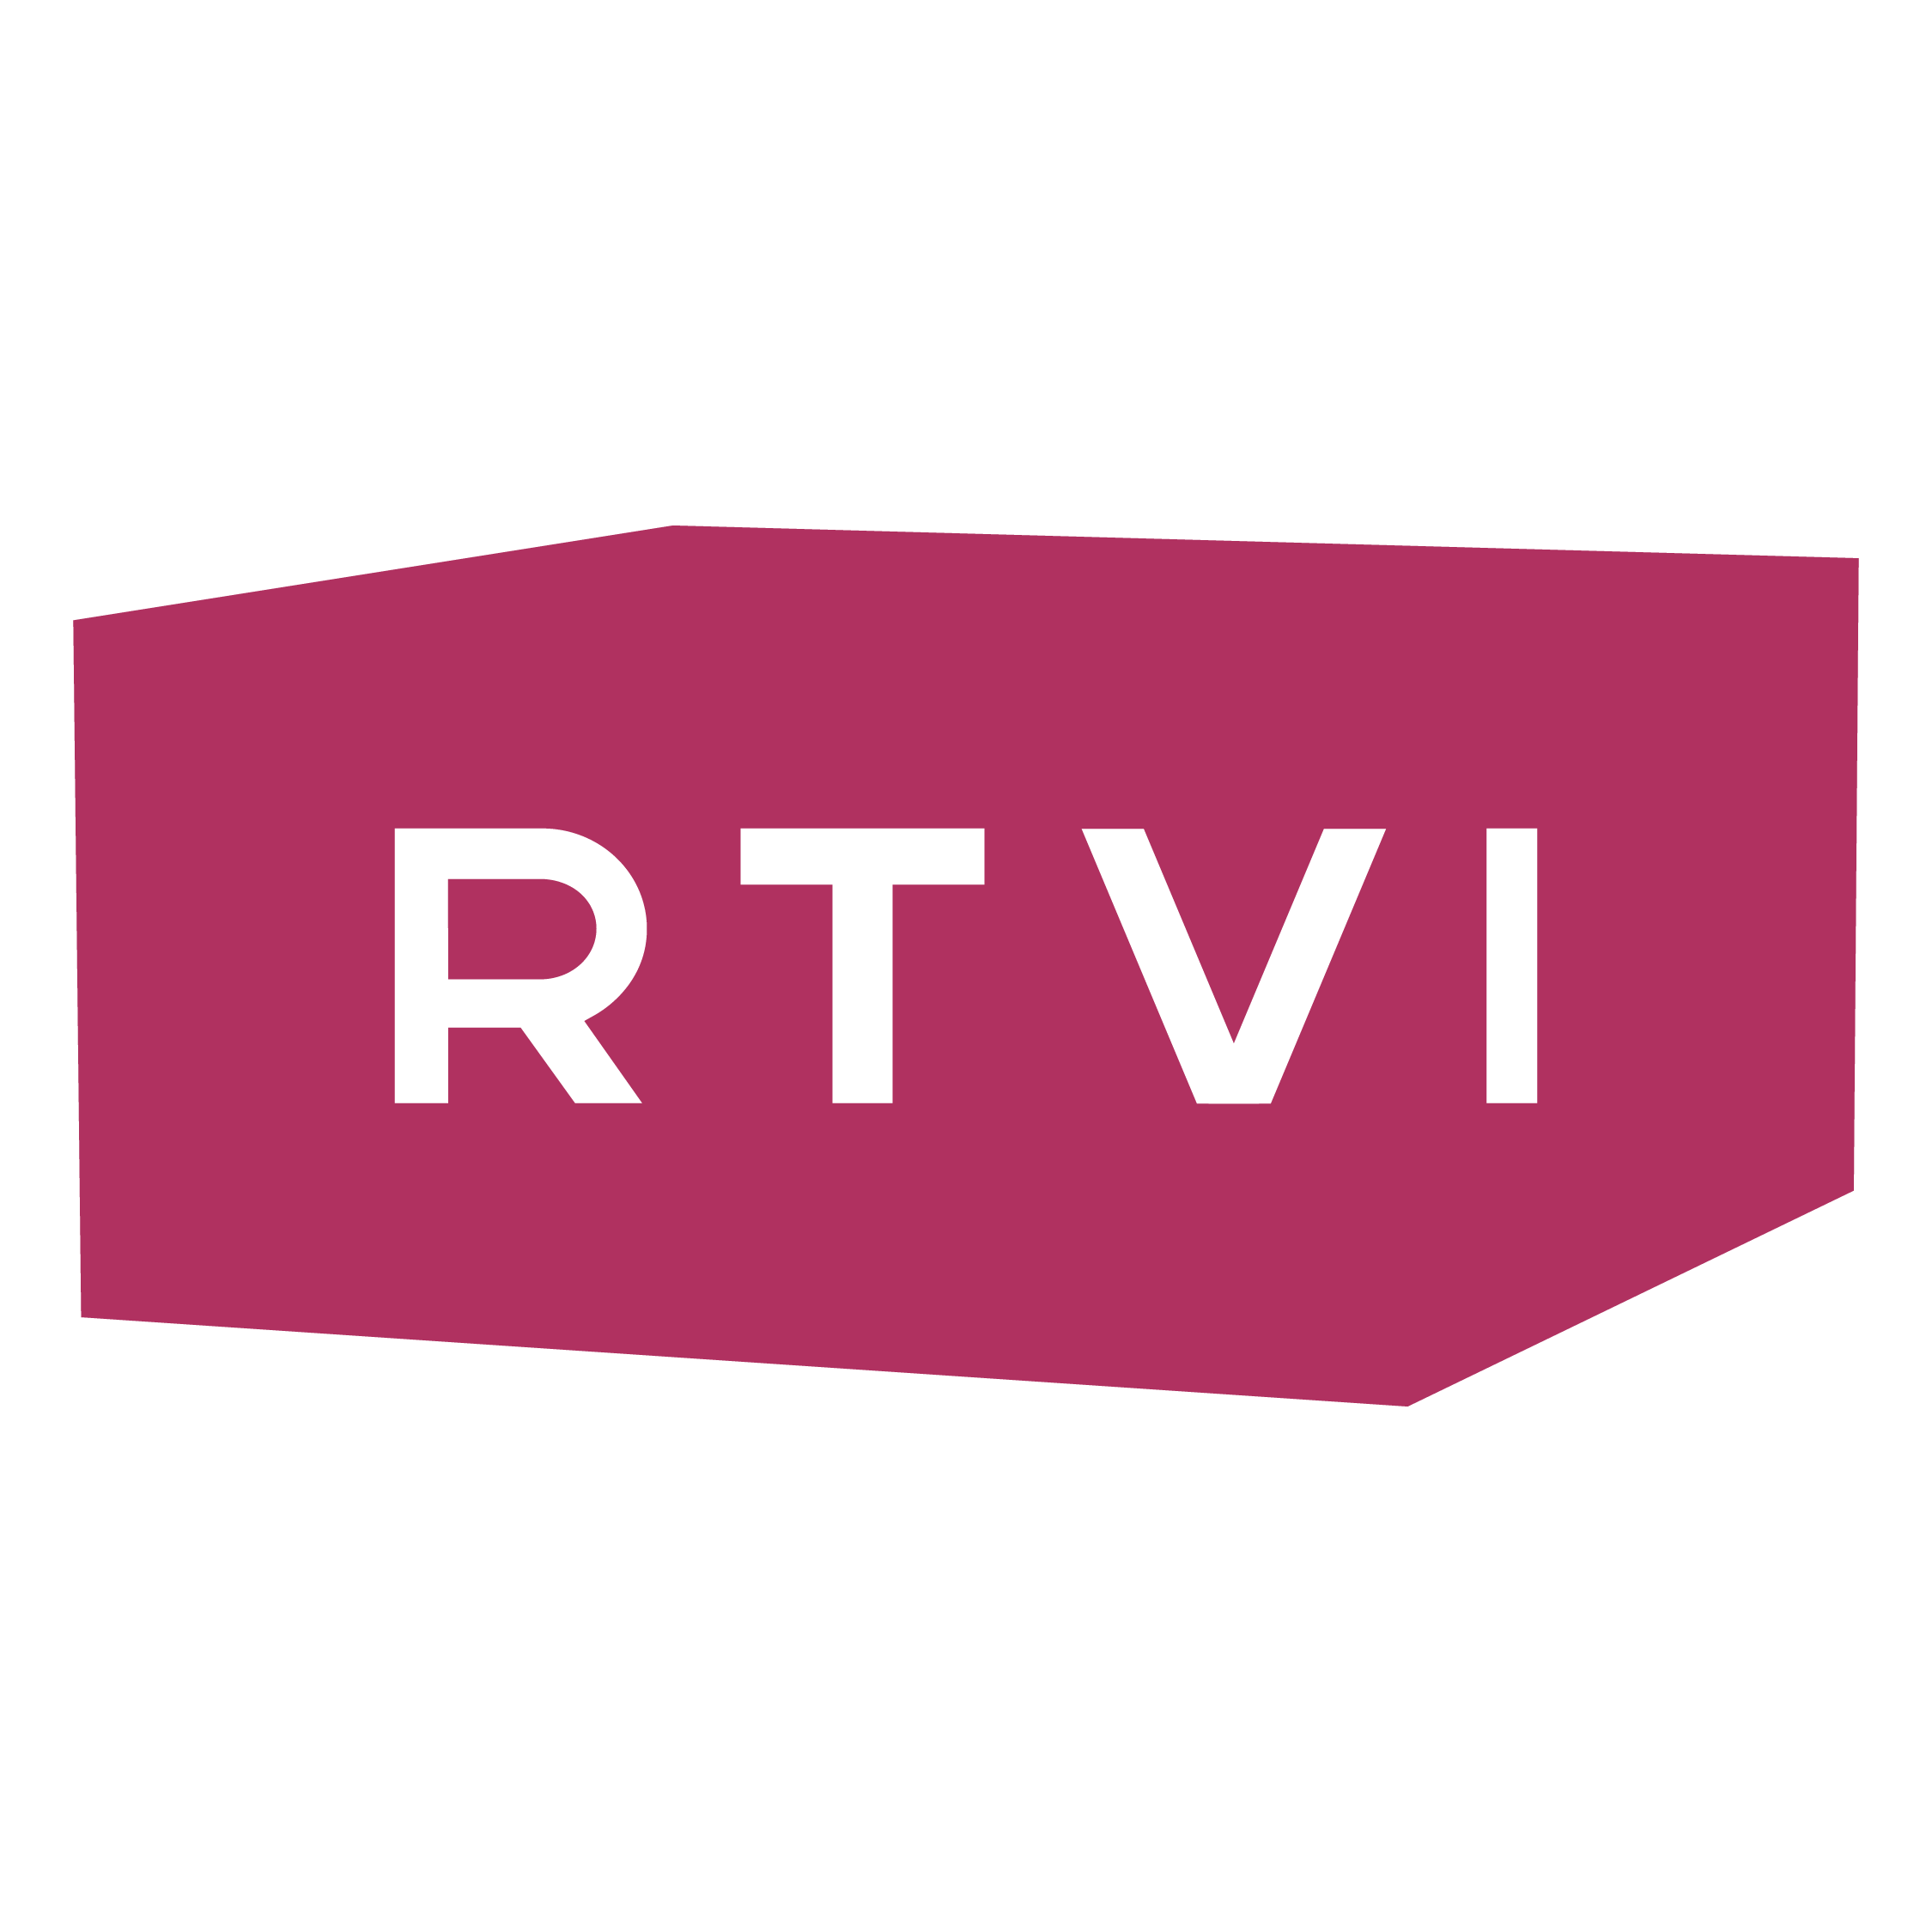 RTVI